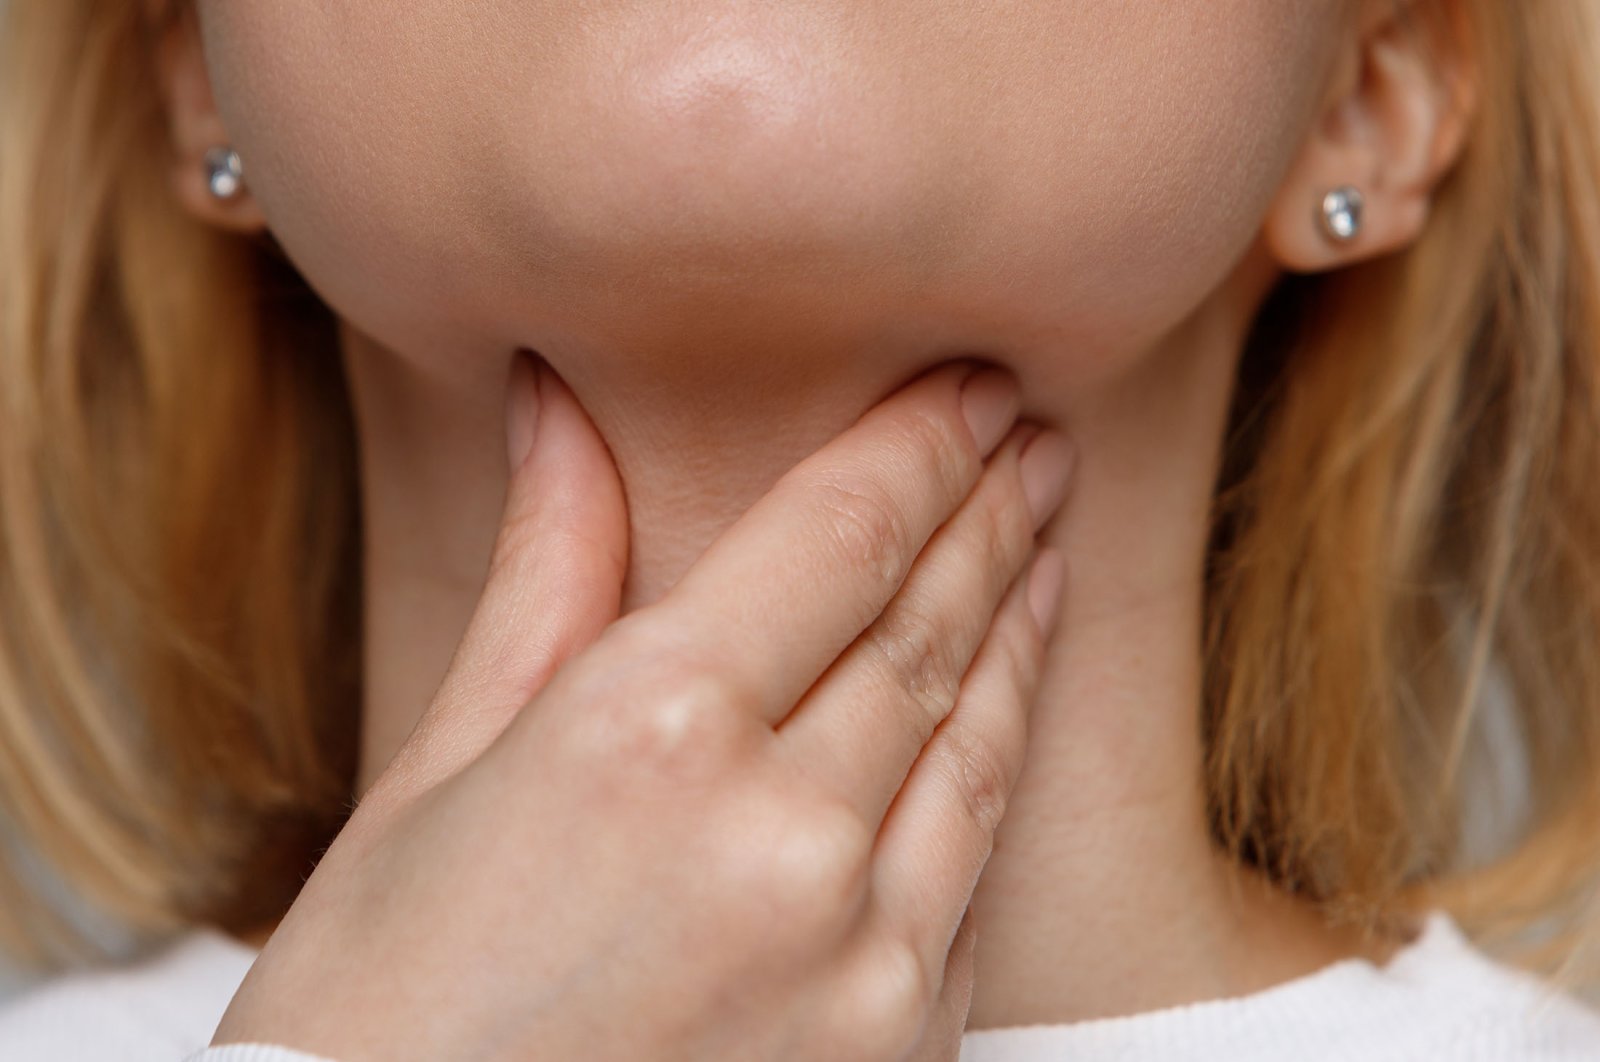 Suara serak yang berkepanjangan dapat mengindikasikan masalah kesehatan utama, pakar memperingatkan